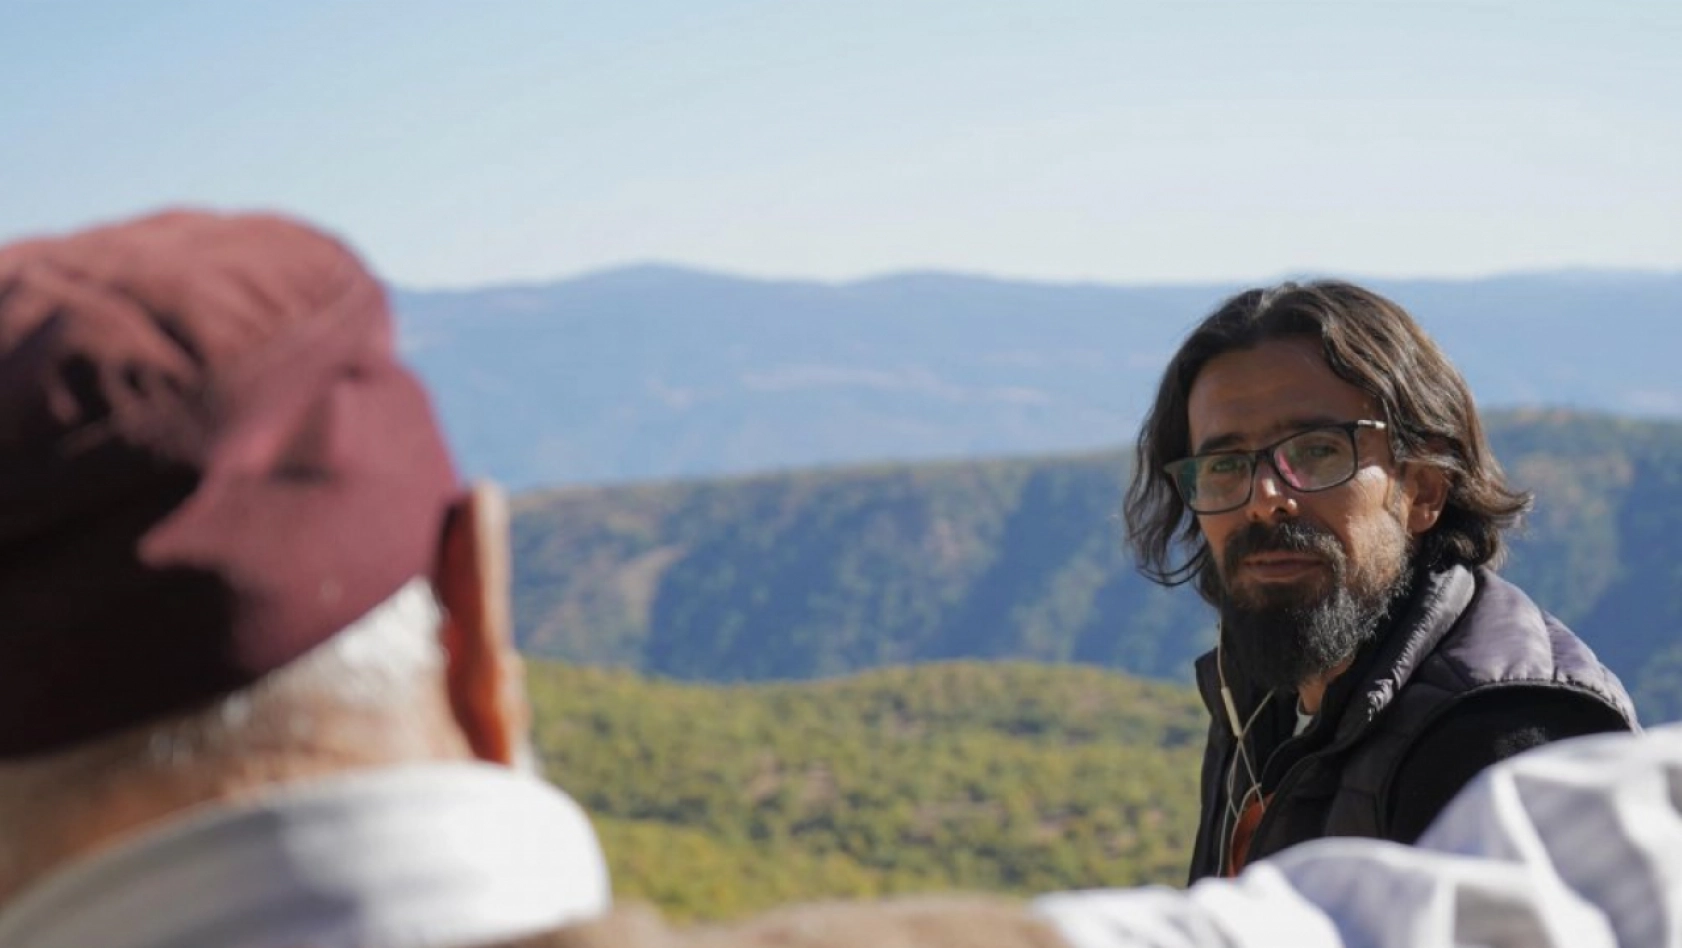 2 Bin köy gezen belgesel yönetmeni, Konya'da adaylığını açıkladı!